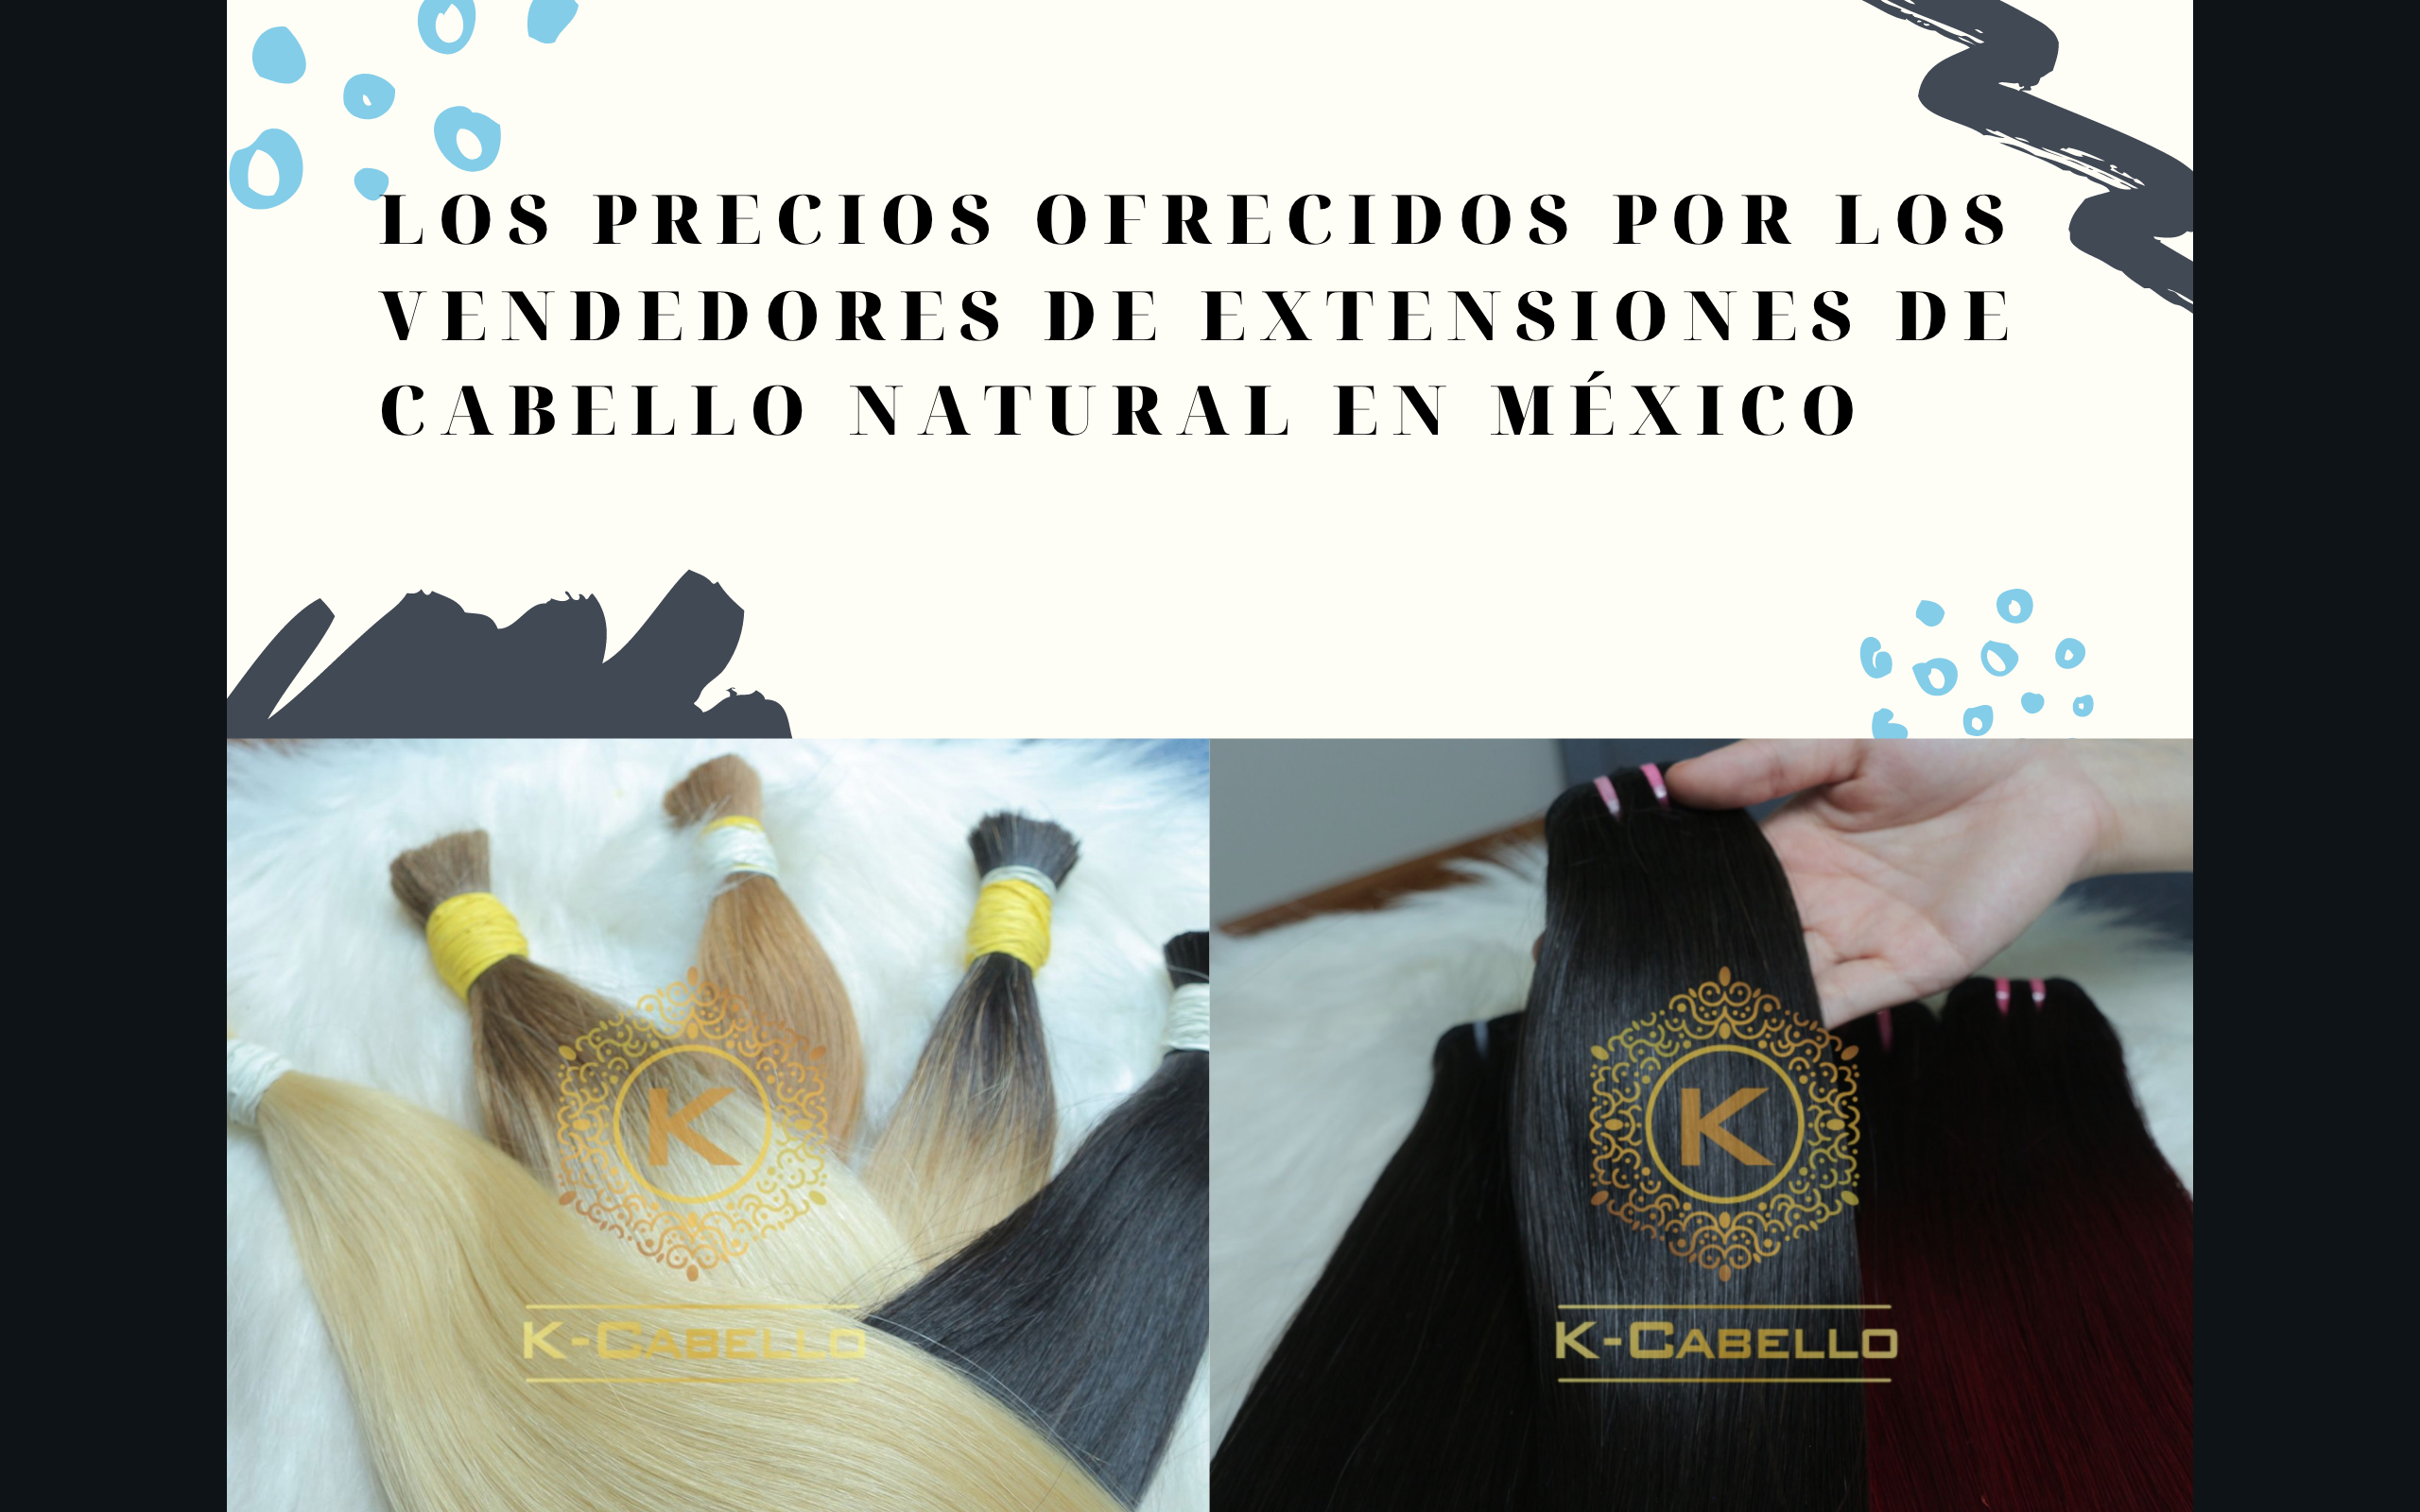 Los-precios-ofrecidos-por-los-vendedores-de-extensiones-de-cabello-natural-en-Mexico 